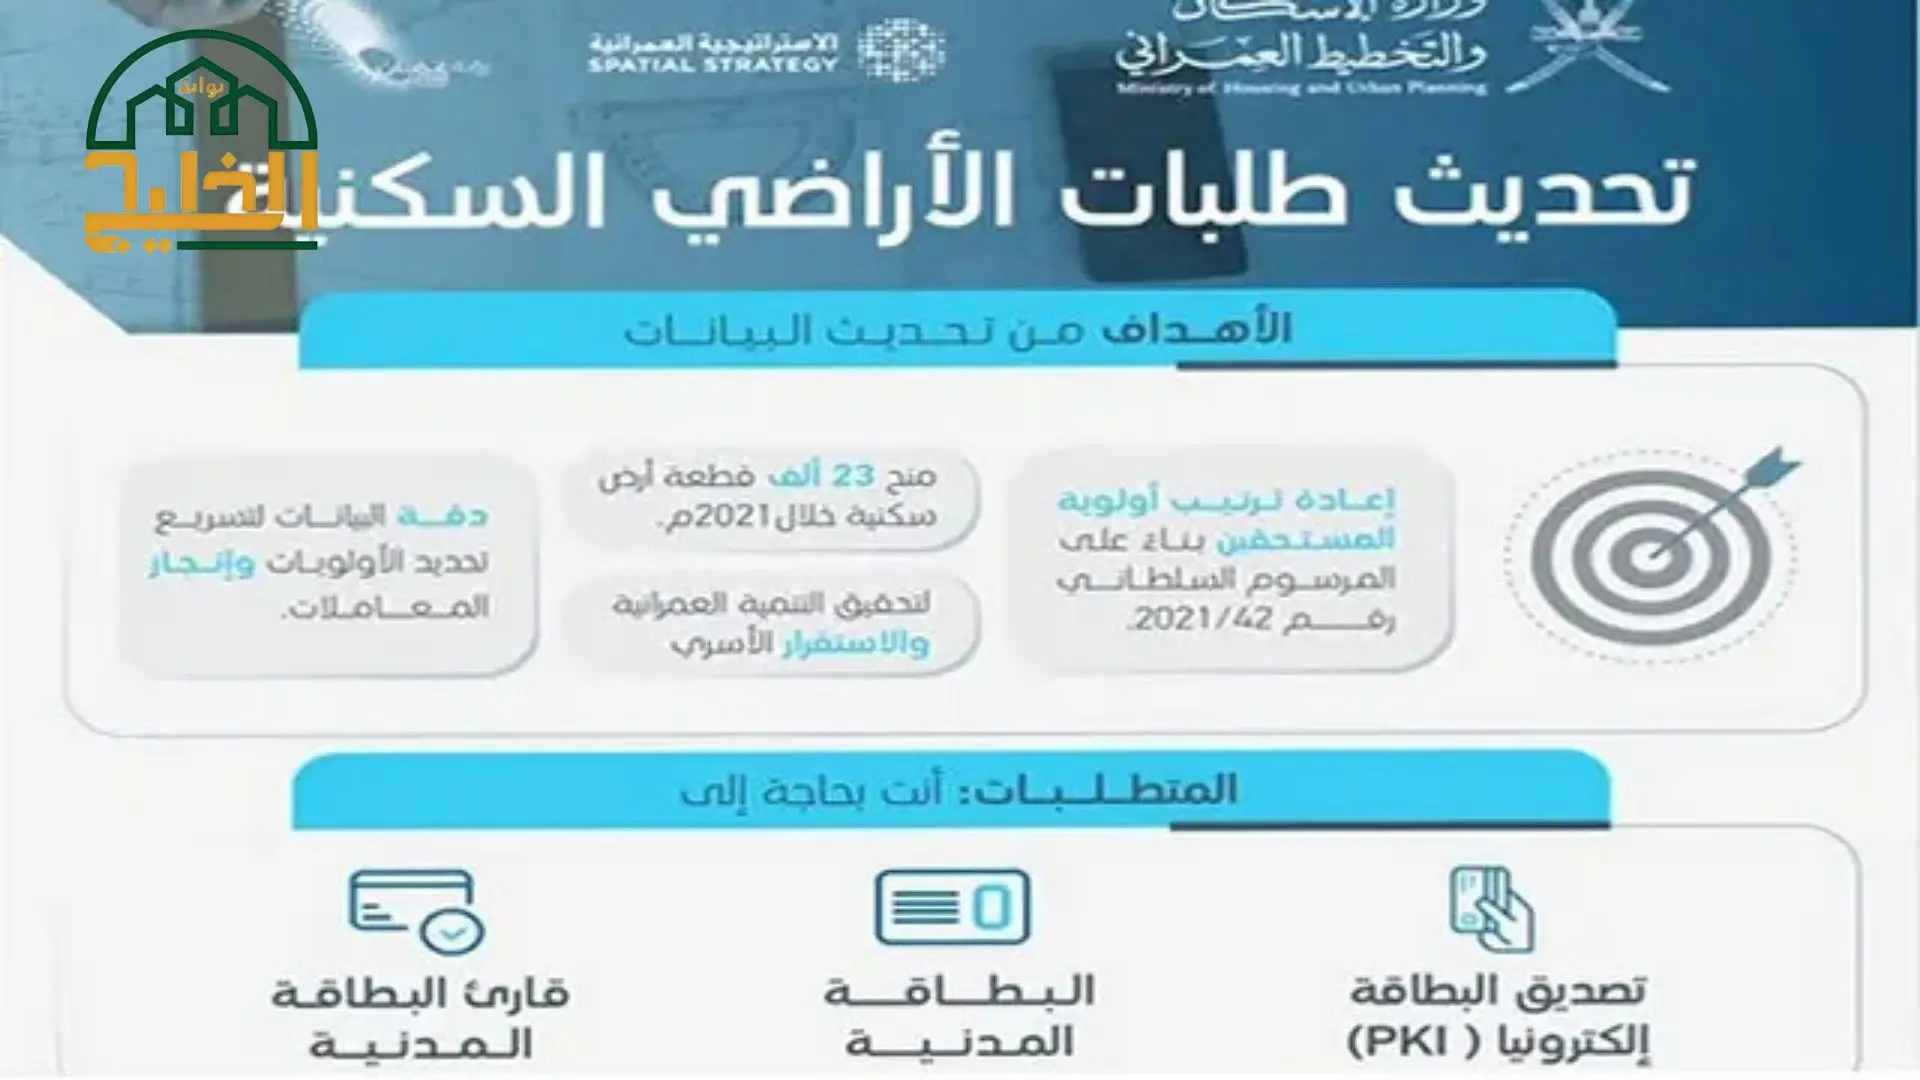 خدمات تقدمها وزارة الإسكان في سلطنة عمان